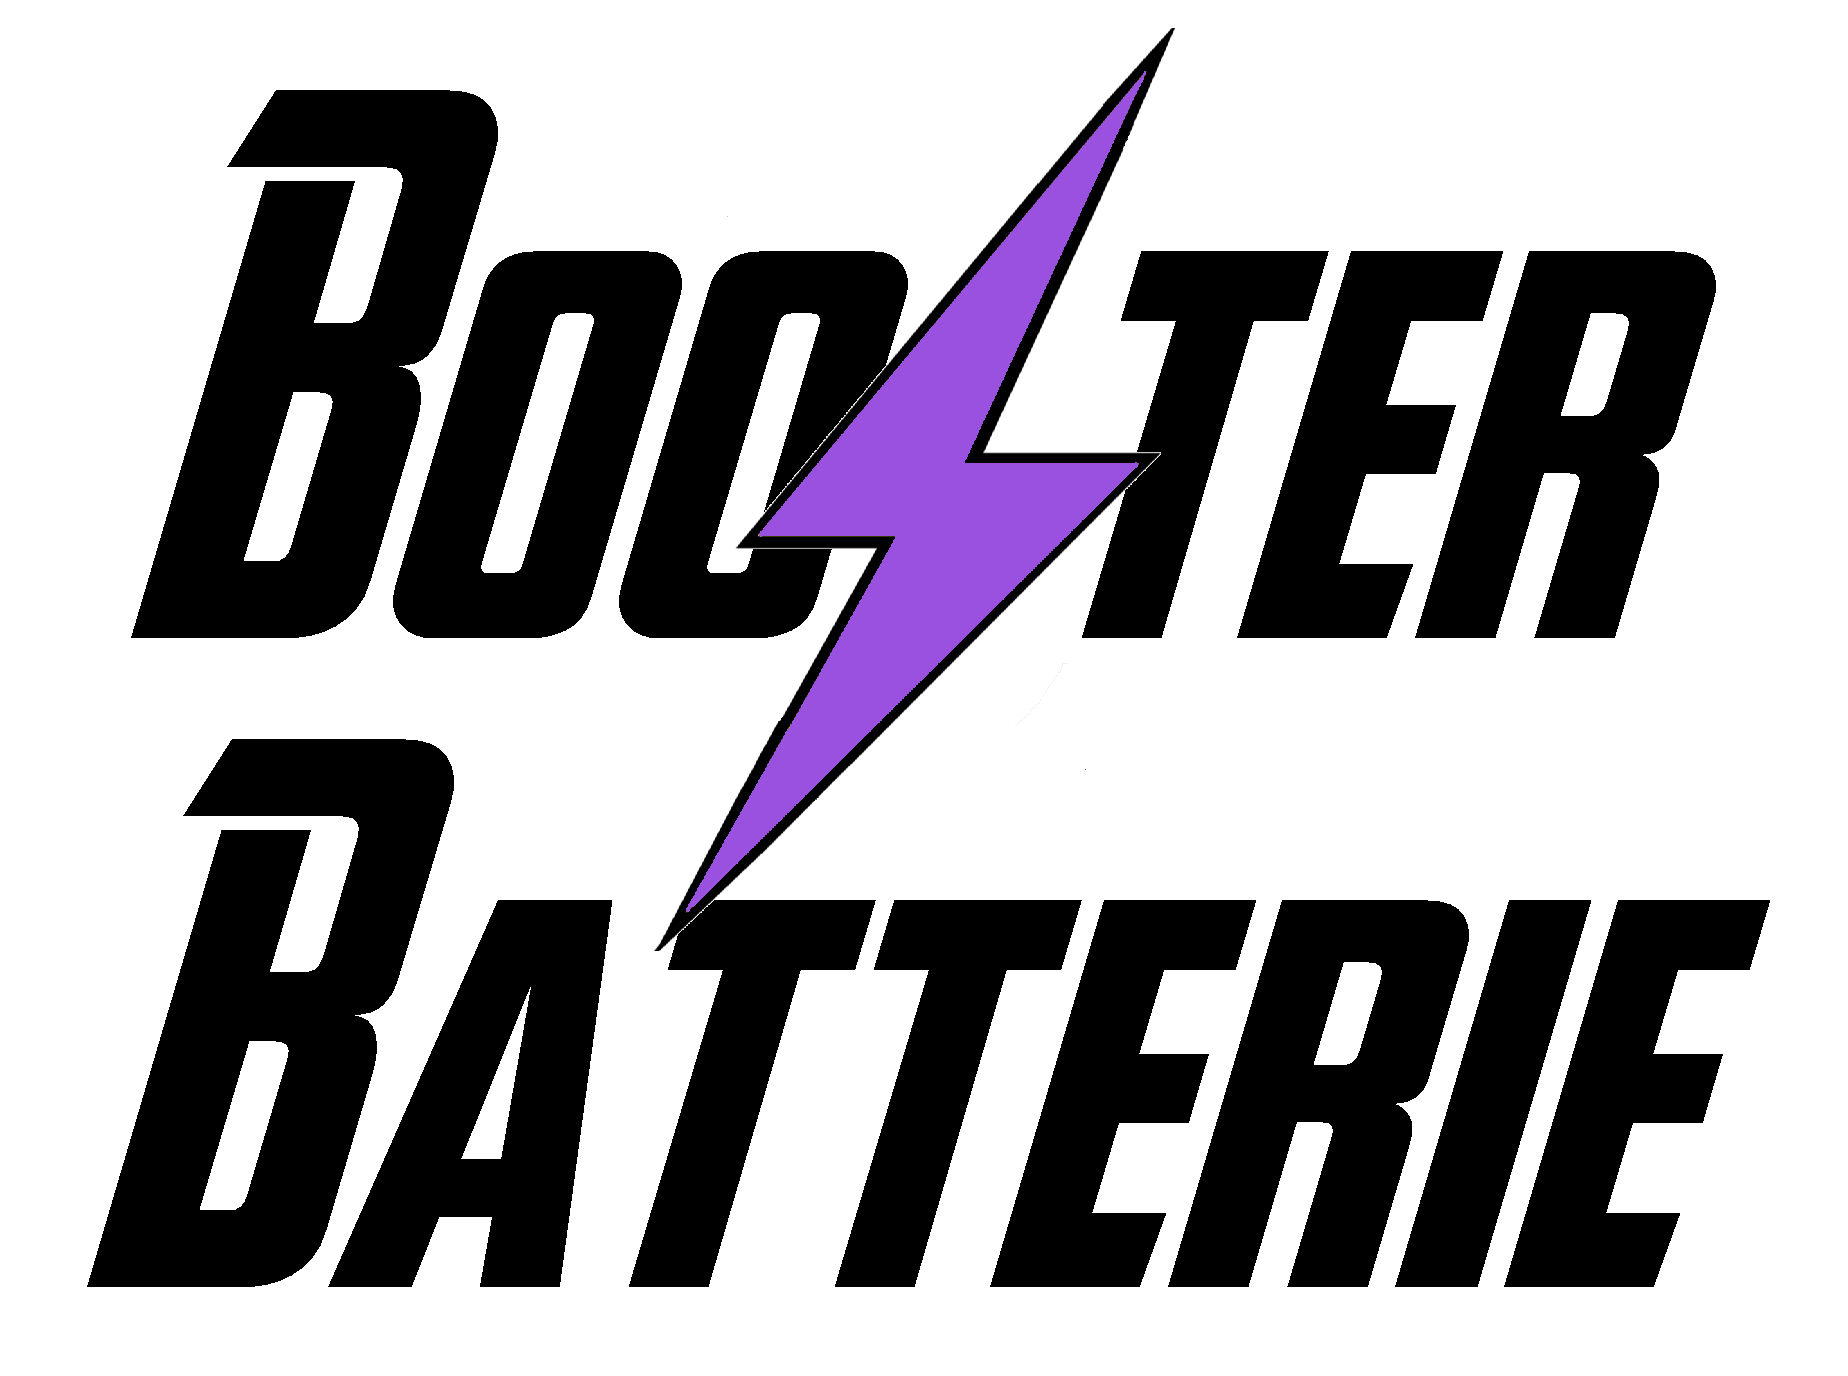 Acheter un booster batterie au meilleur prix